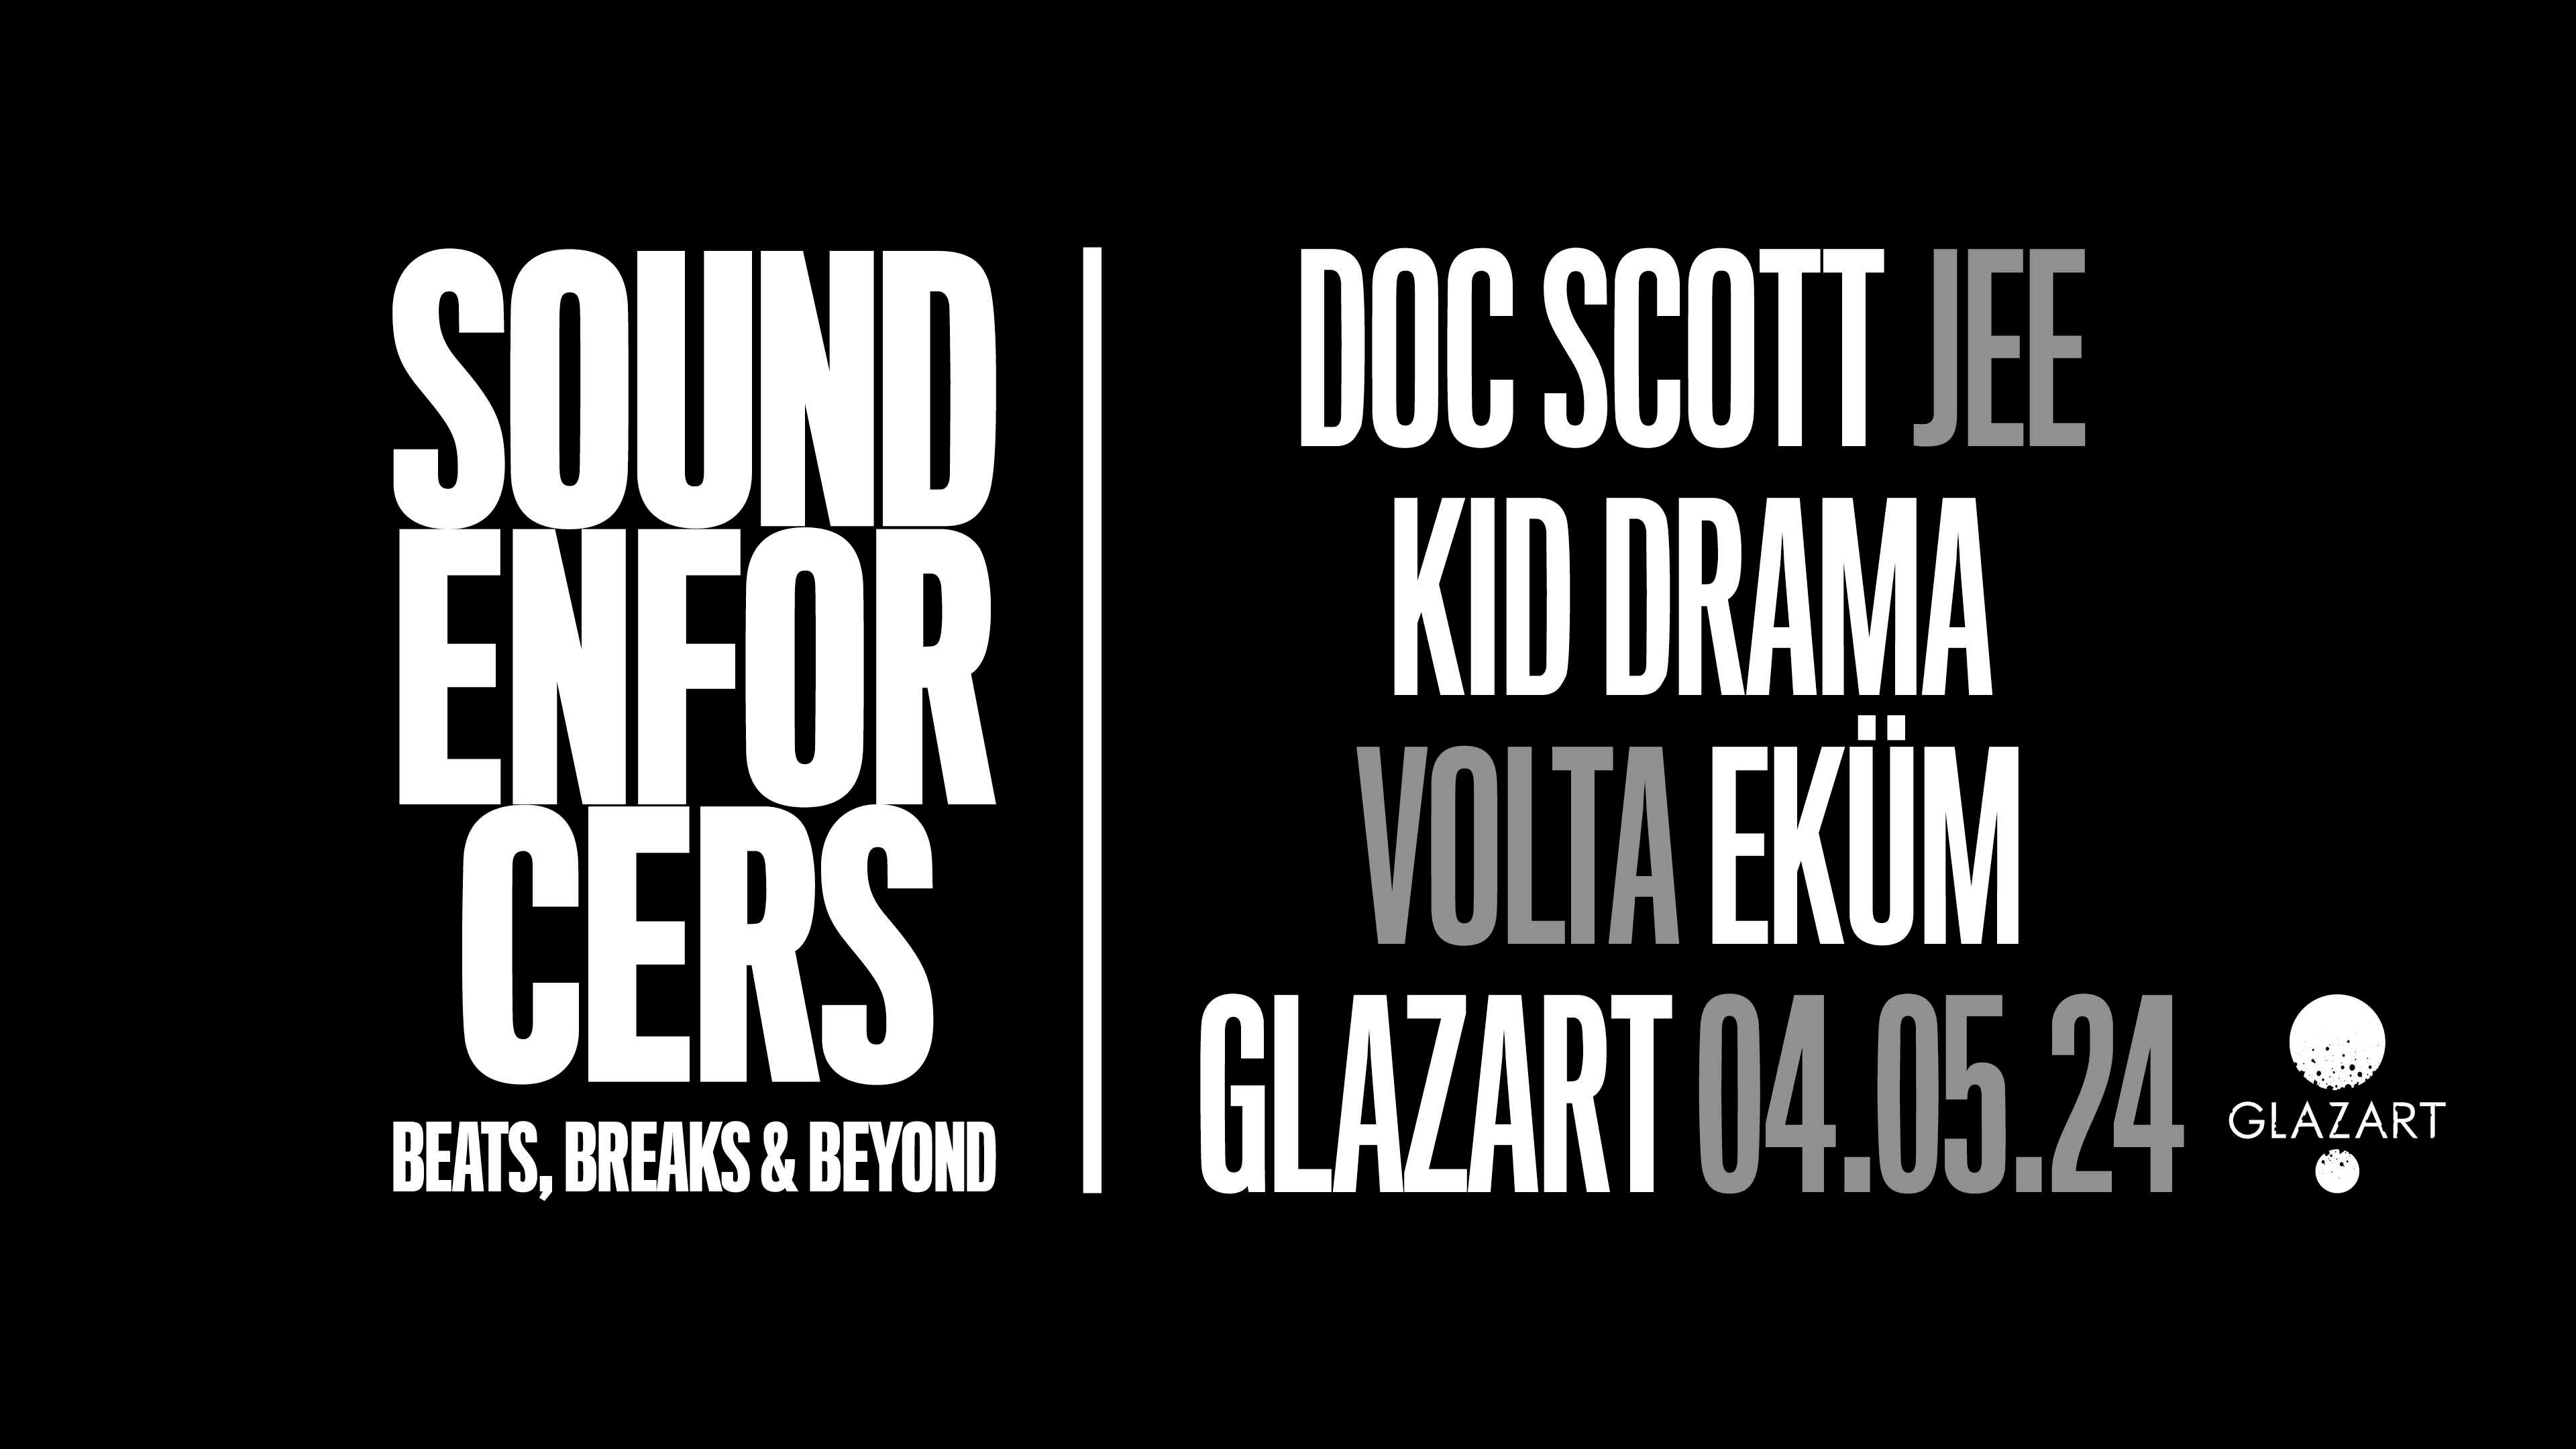 SOUND ENFORCERS x Glazart: Doc Scott, Kid Drama - フライヤー表